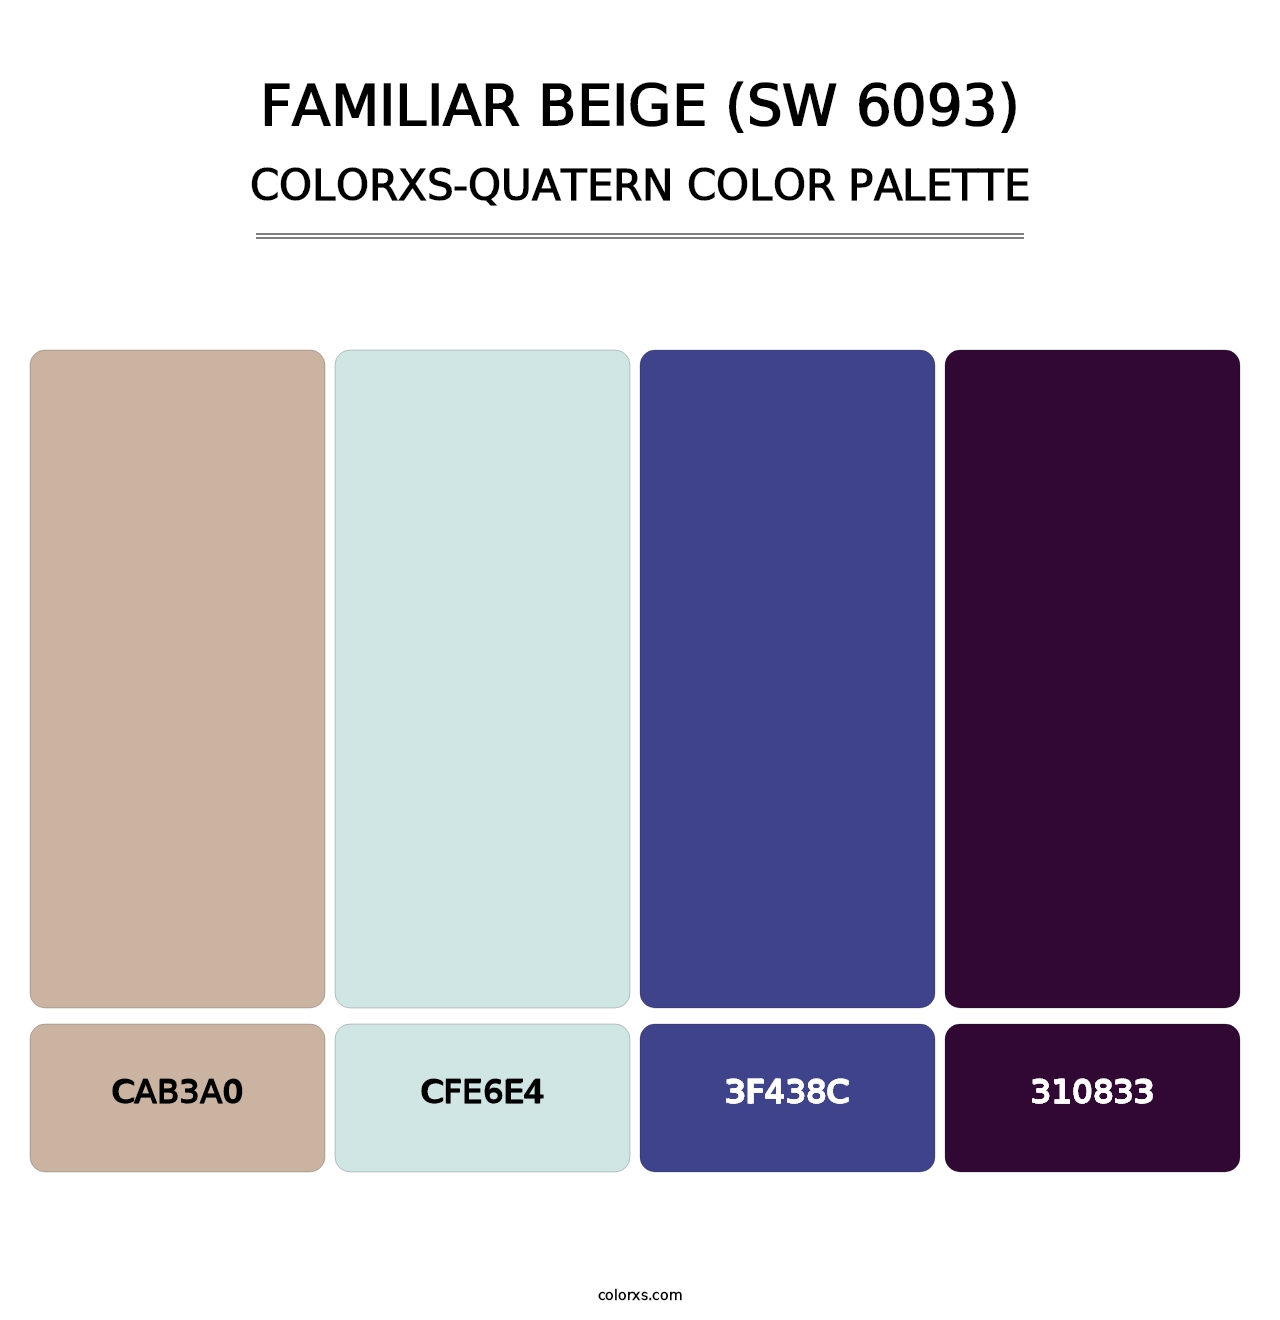 Familiar Beige (SW 6093) - Colorxs Quatern Palette